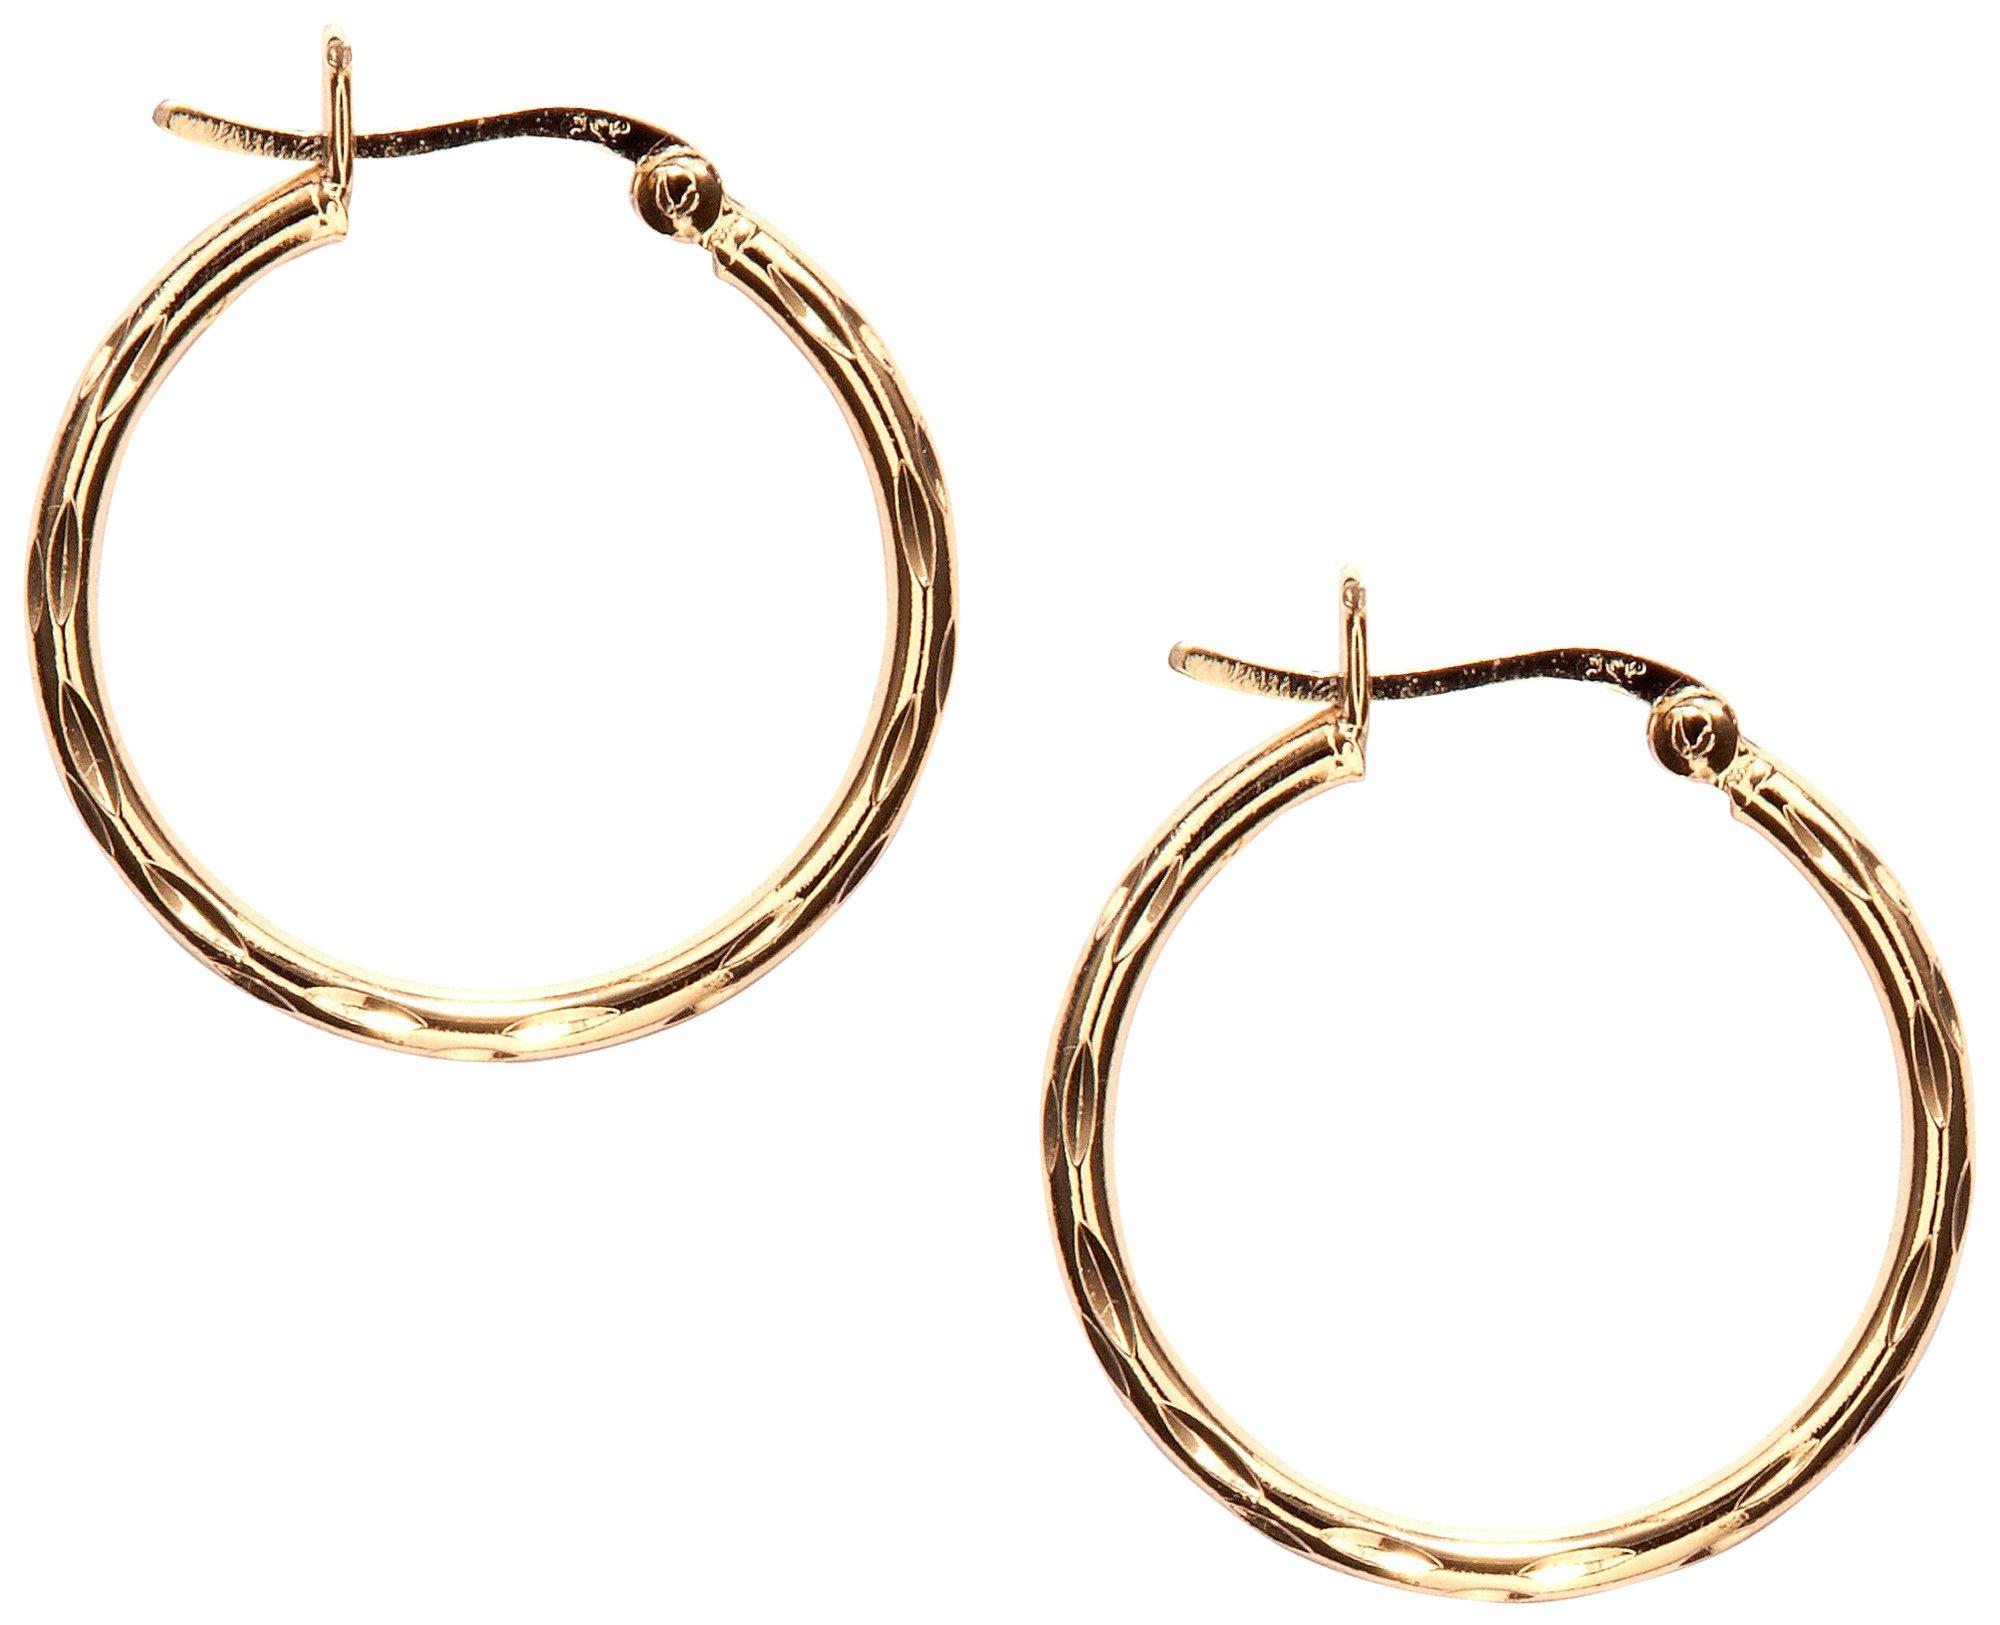 1 In. Textured Gold Plate Hoop Earrings